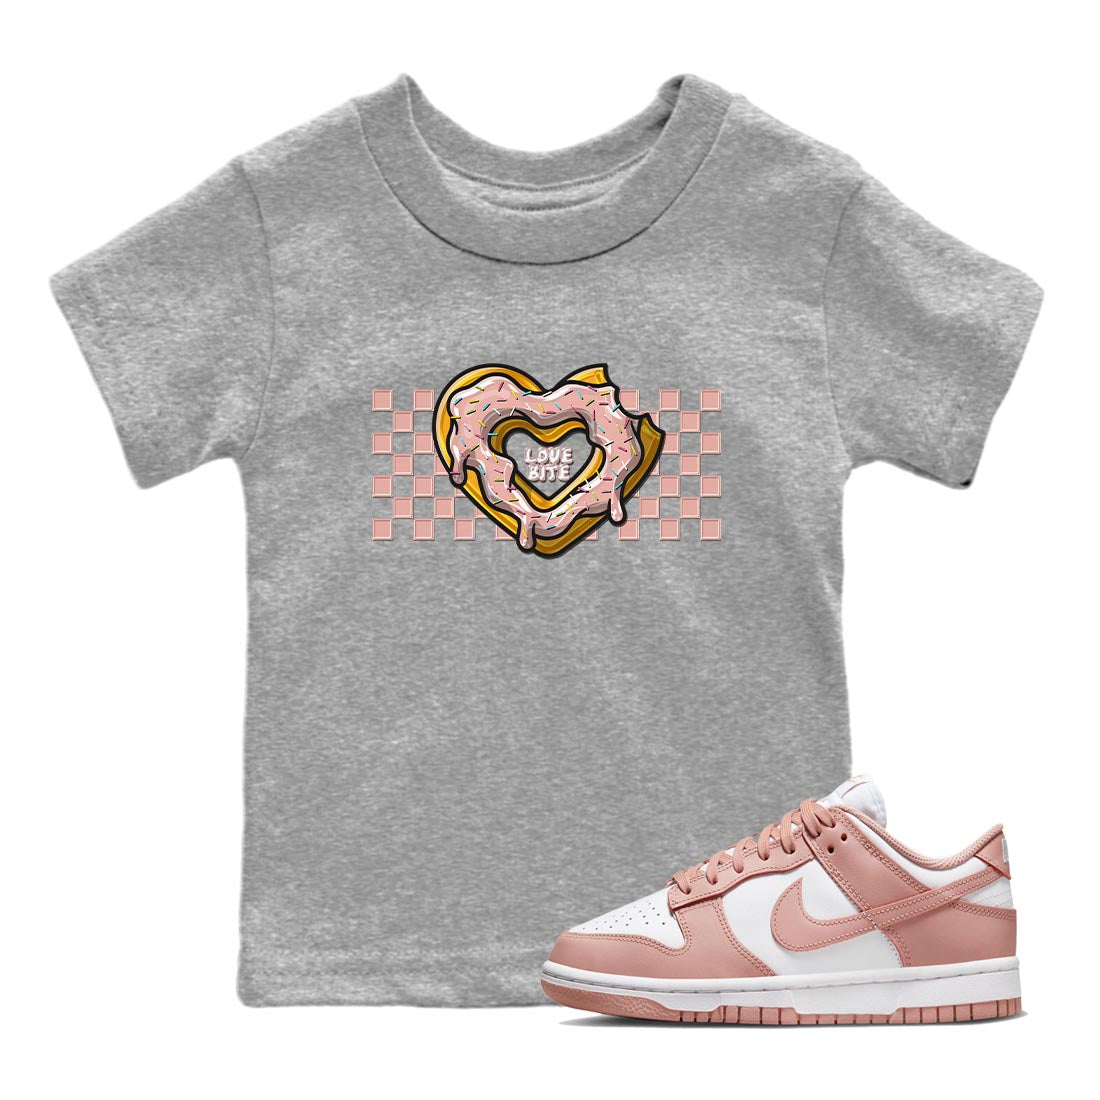 Nike Dunks Low Rose Whisper shirt to match jordans Love Bite Streetwear Sneaker Shirt Nike Dunk Rose Whisper Drip Gear Zone Sneaker Matching Clothing Baby Toddler Heather Grey 1 T-Shirt